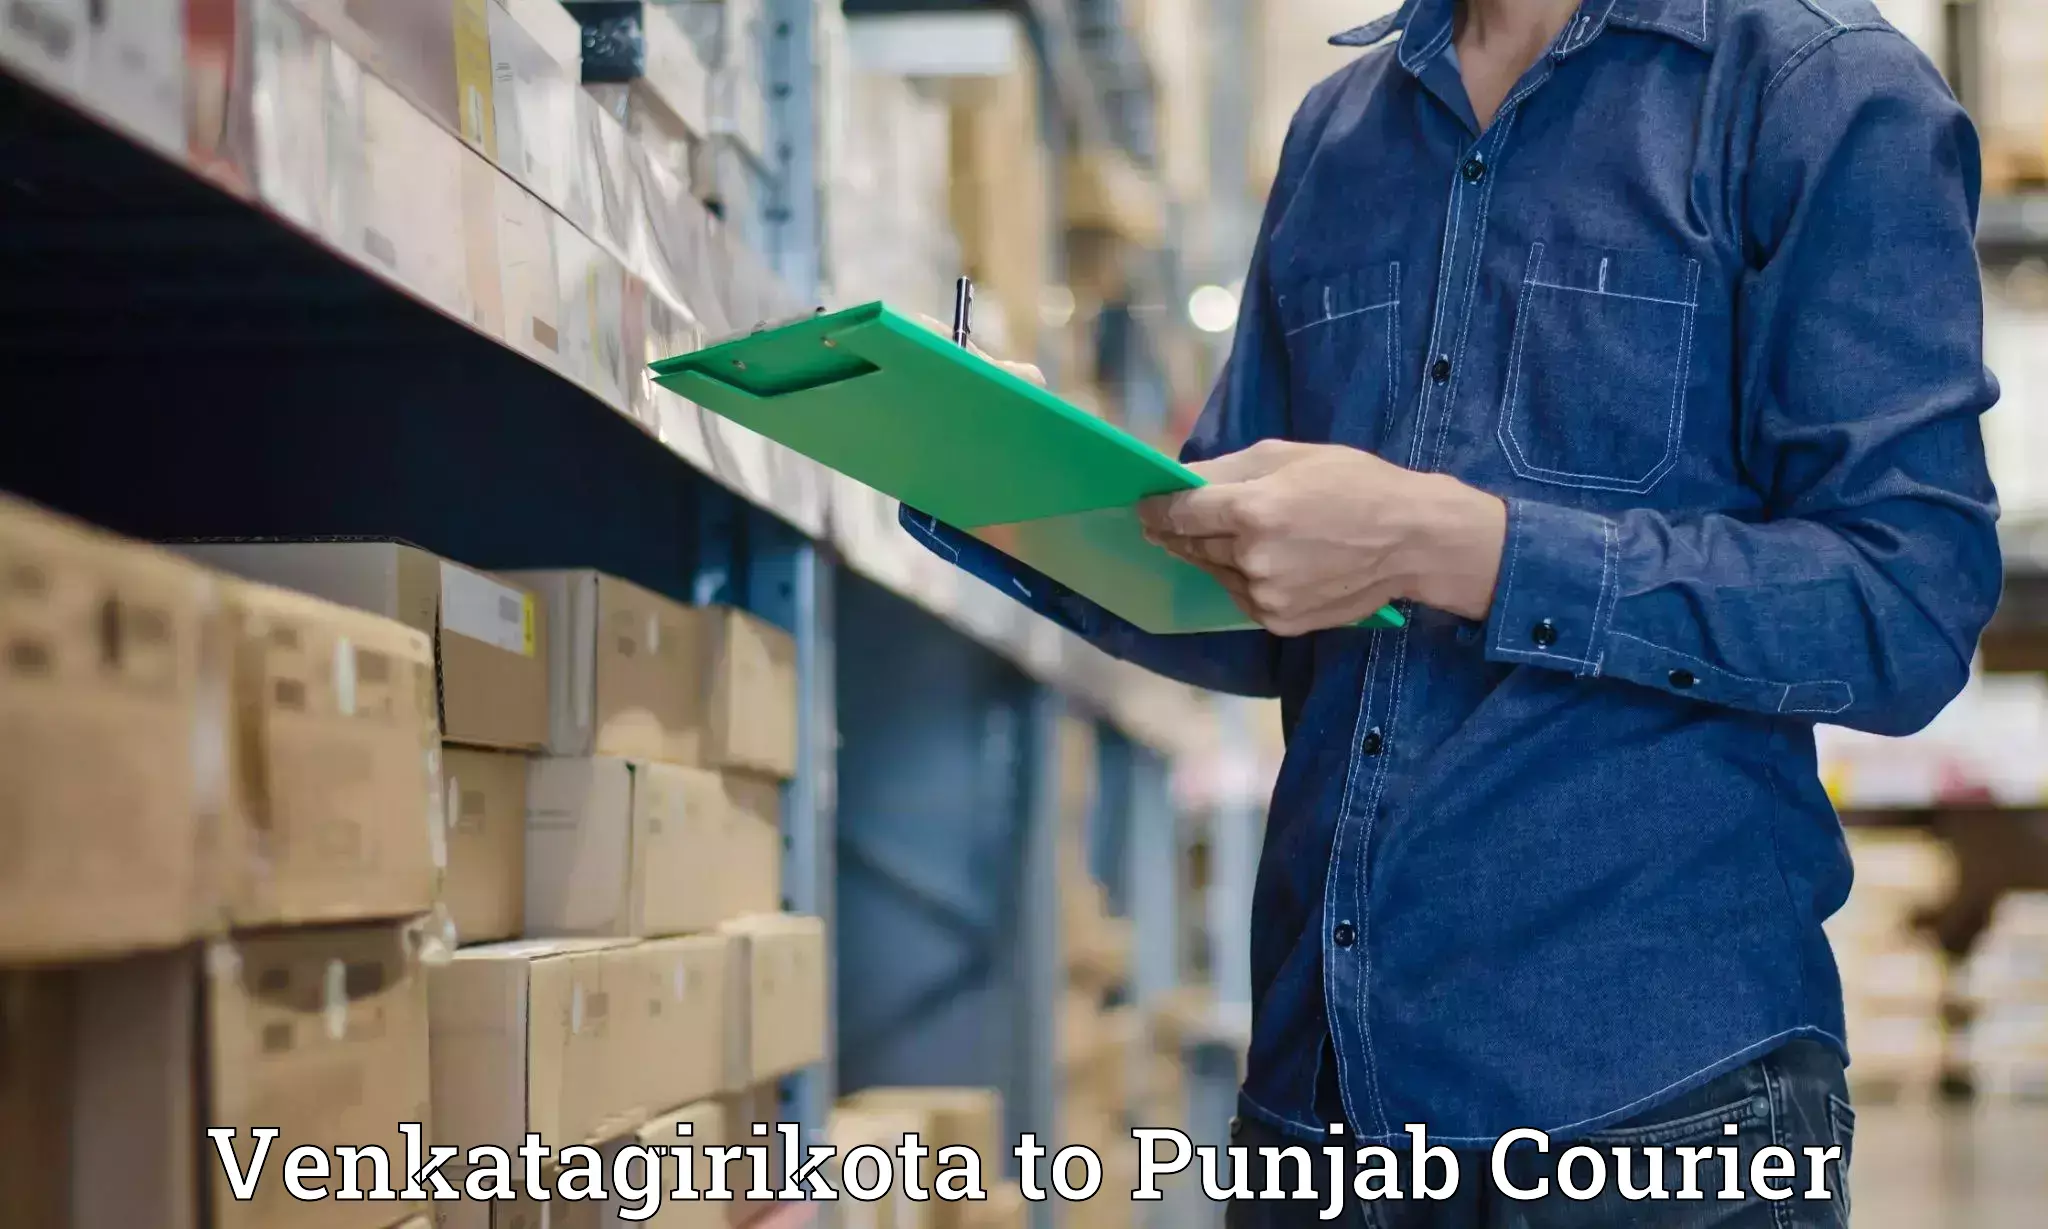 Baggage shipping advice Venkatagirikota to Punjab